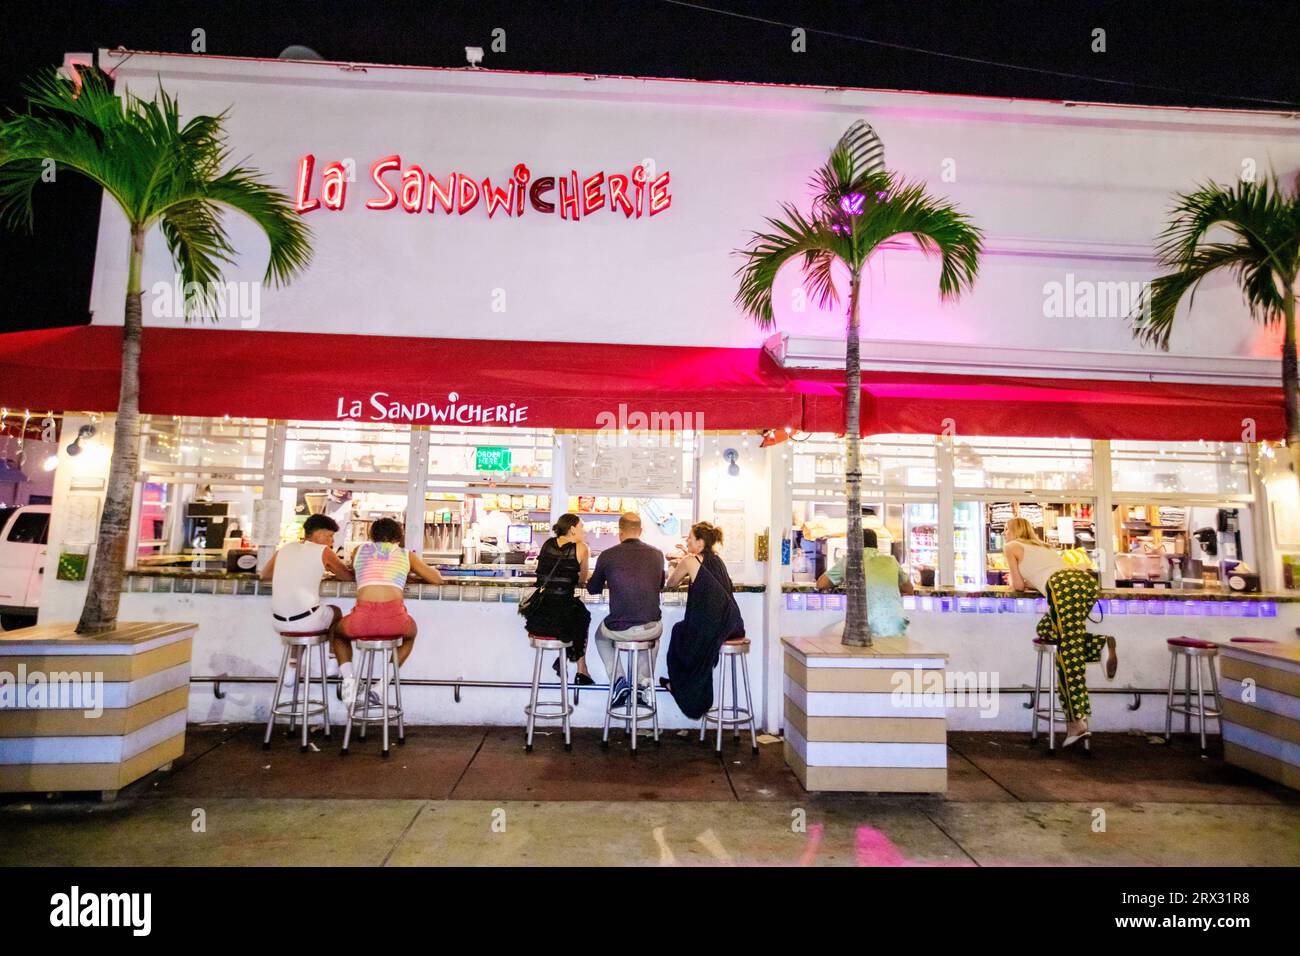 La Sandwicherie, Miami, Florida, United States of America, North America Stock Photo